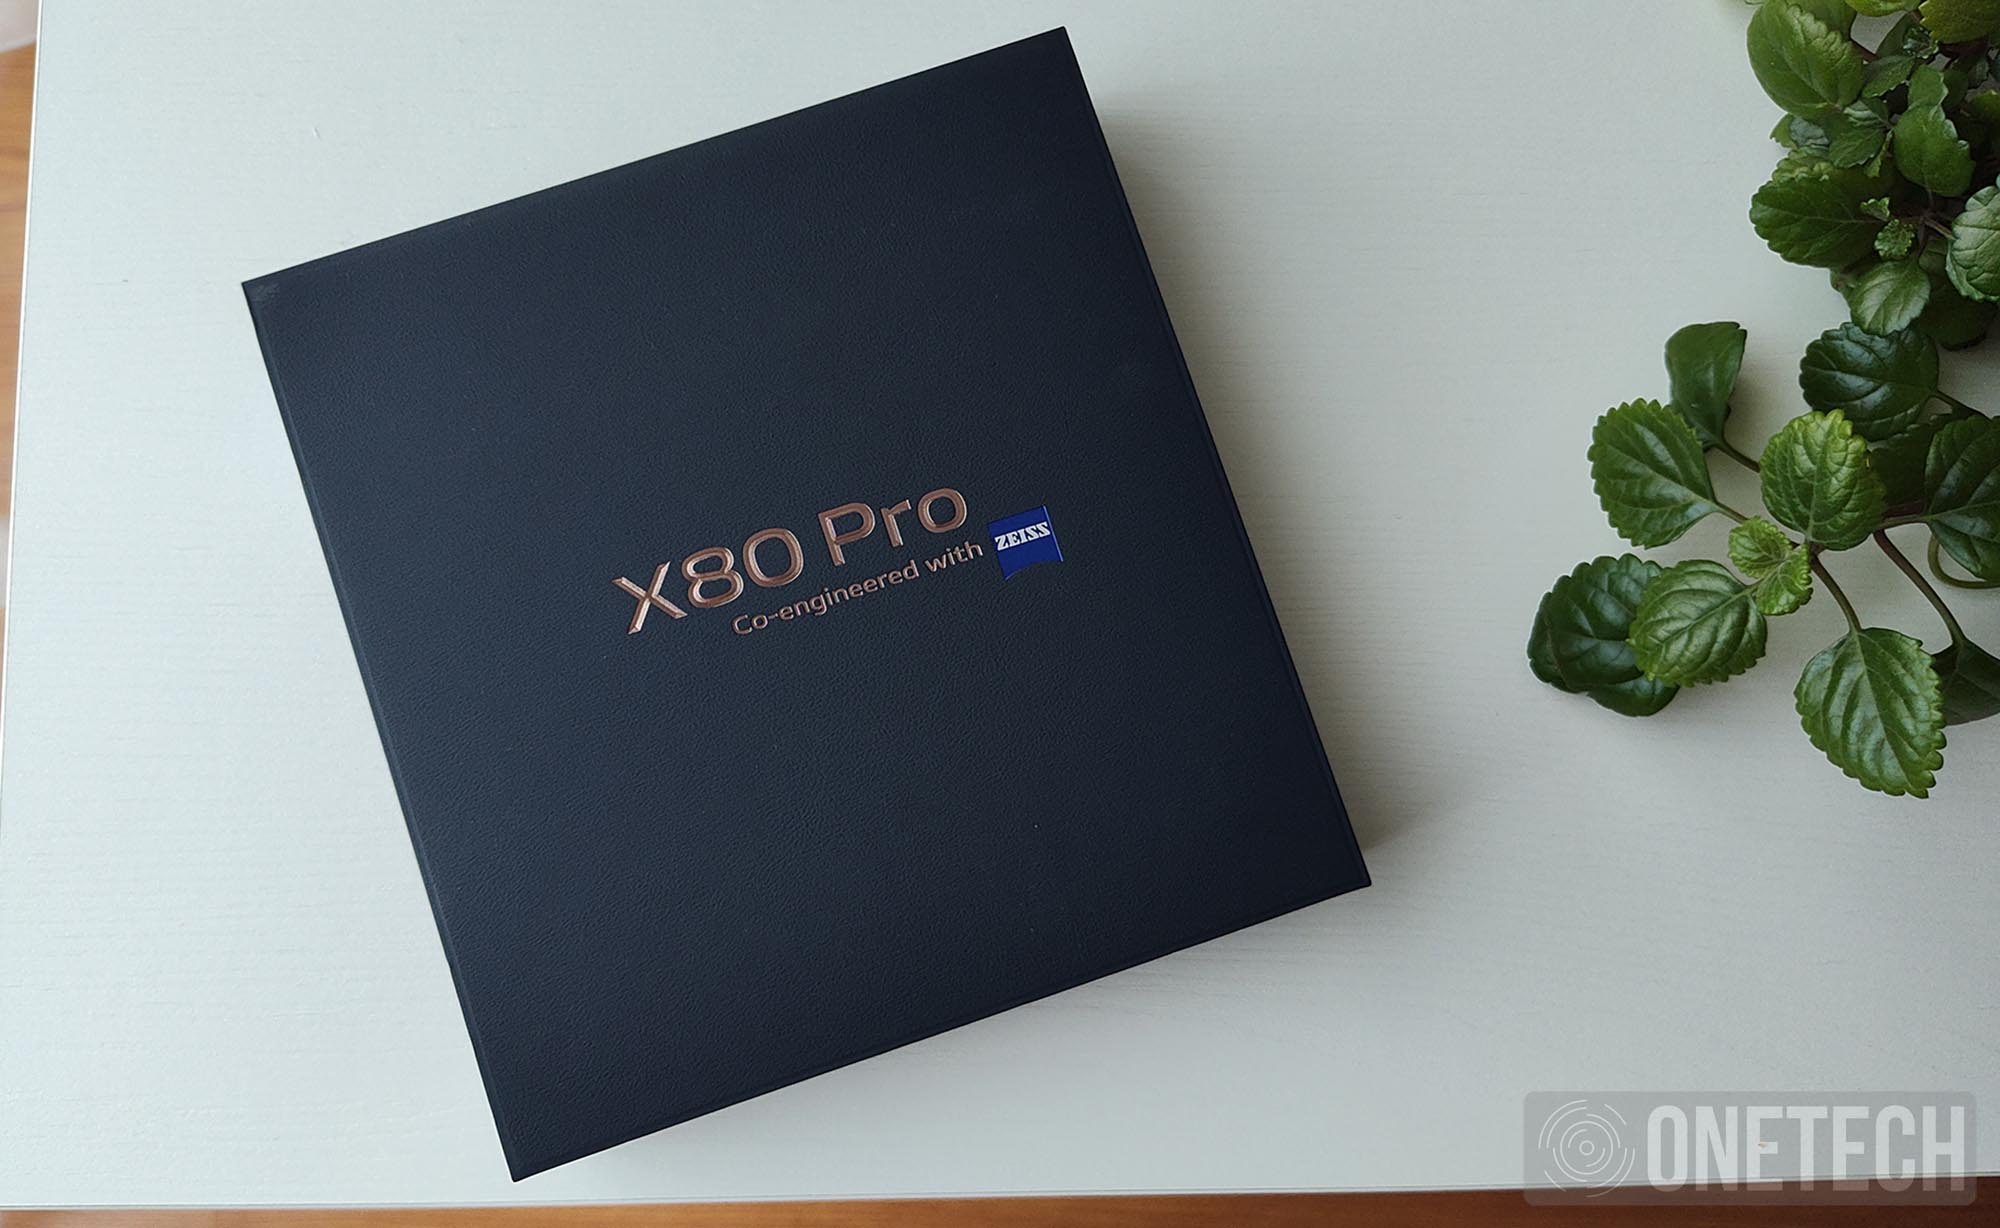 Vivo X80 Pro: un gigante con una fotografía estelar - Análisis 29